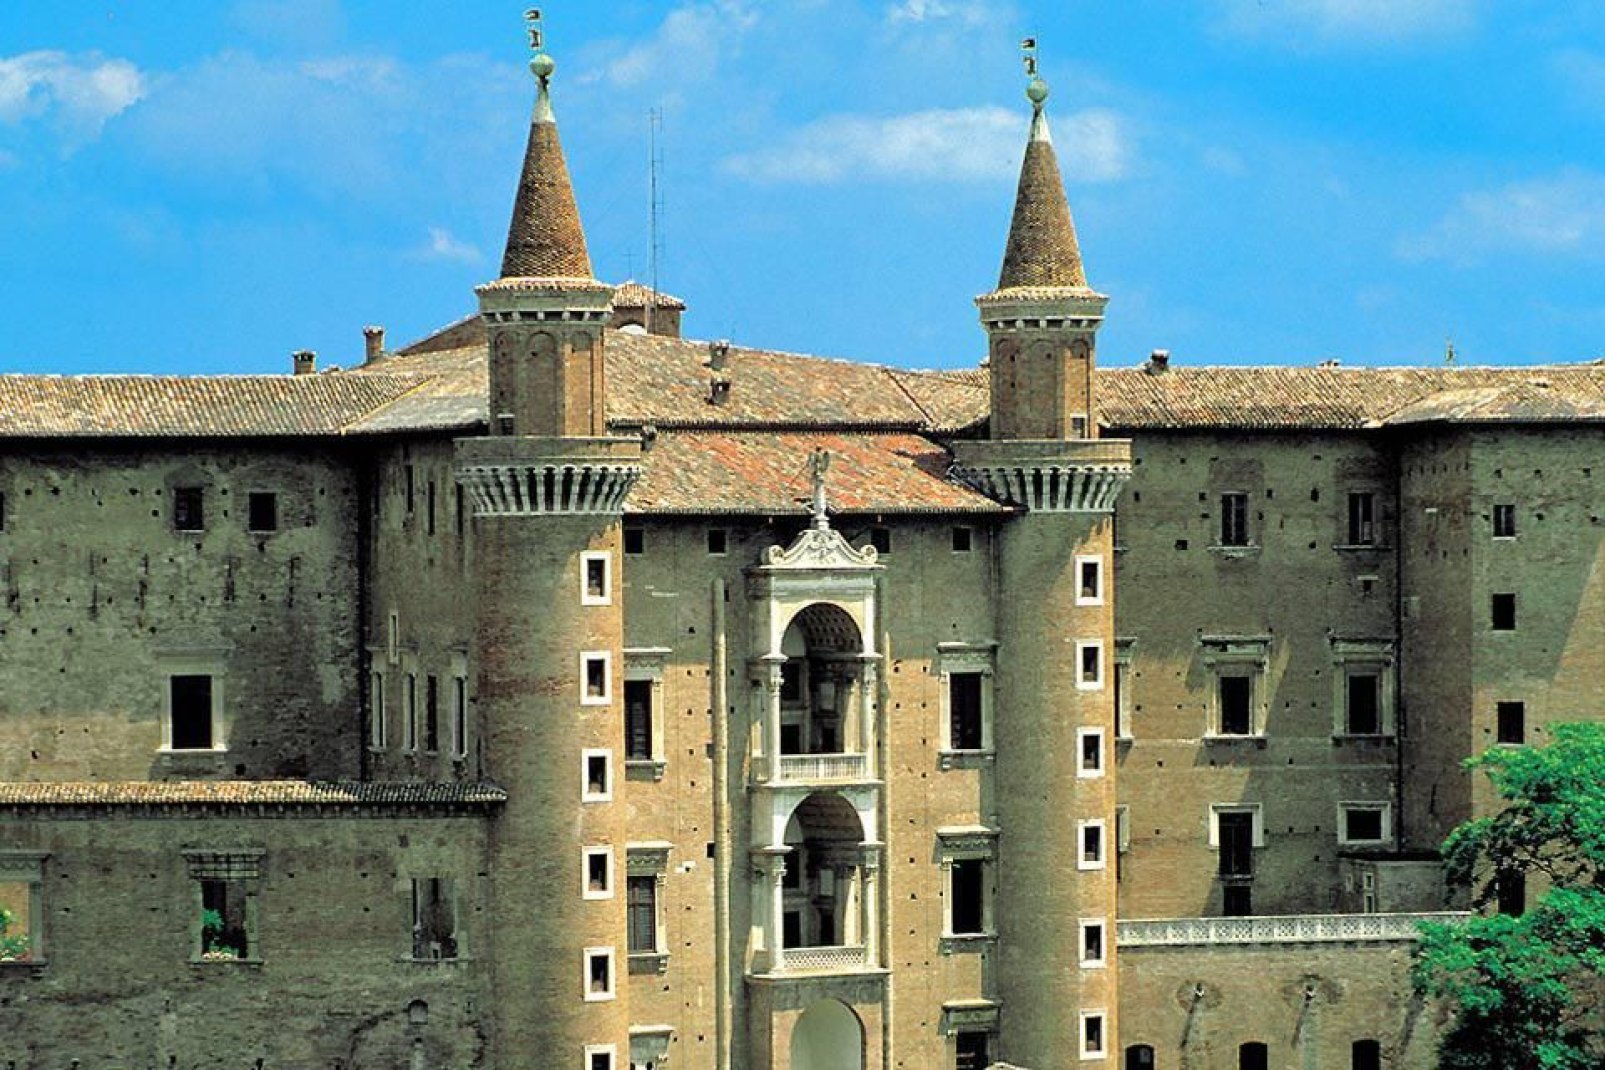 El Palacio Ducal de Urbino es uno de los ejemplos arquitectónicos y artísticos más interesantes de todo el Renacimiento italiano.